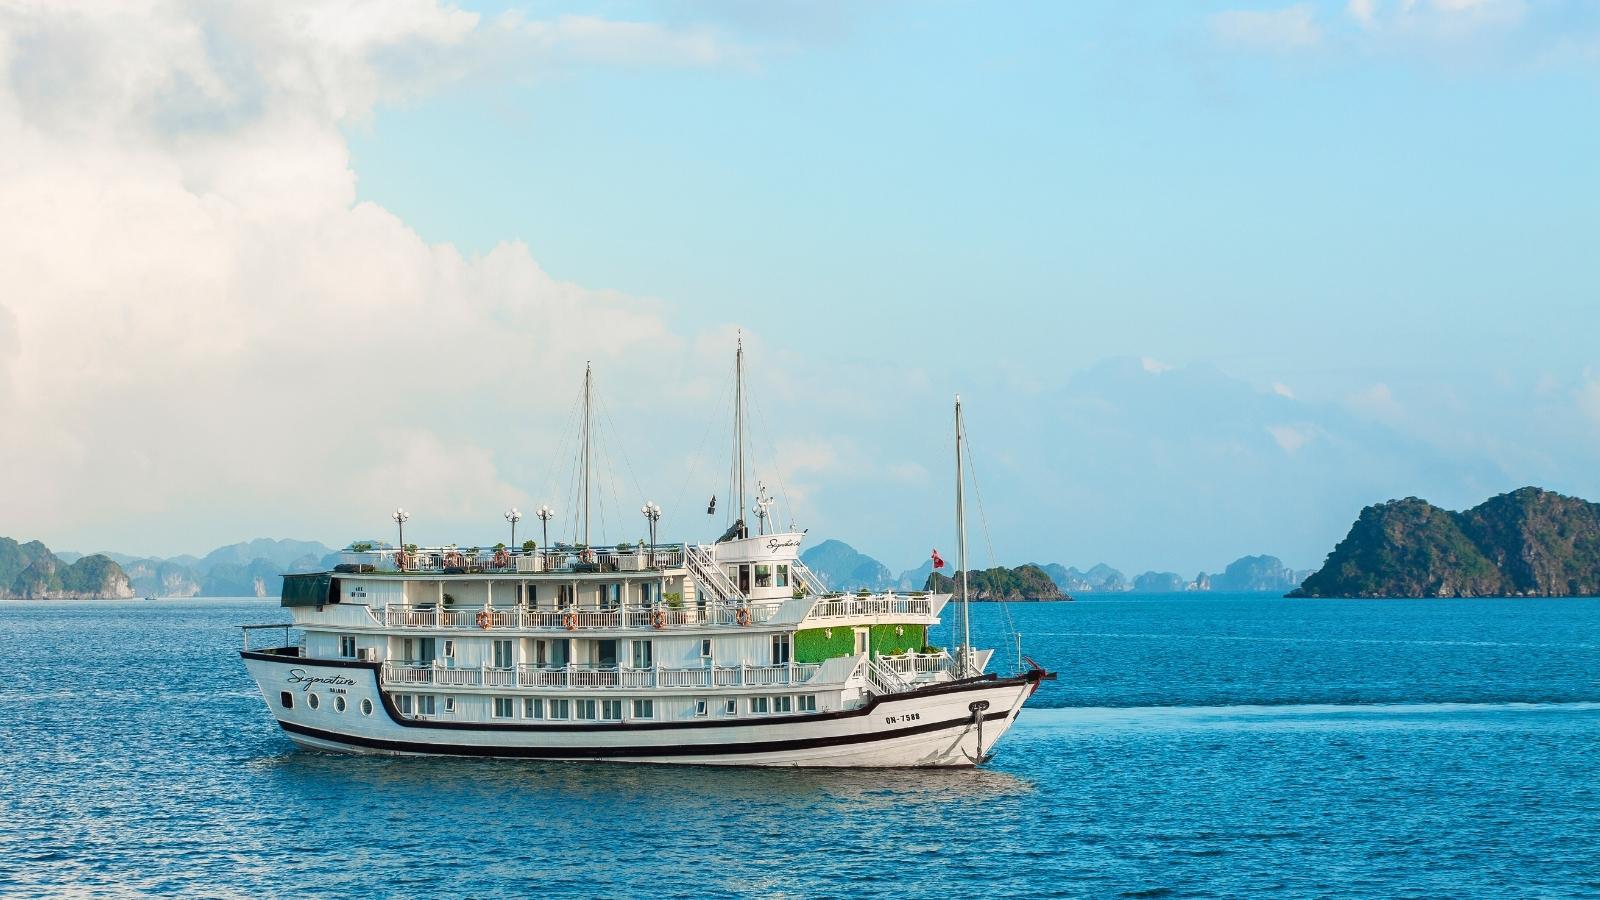 Signature Cruise Bai Tu Long Bay